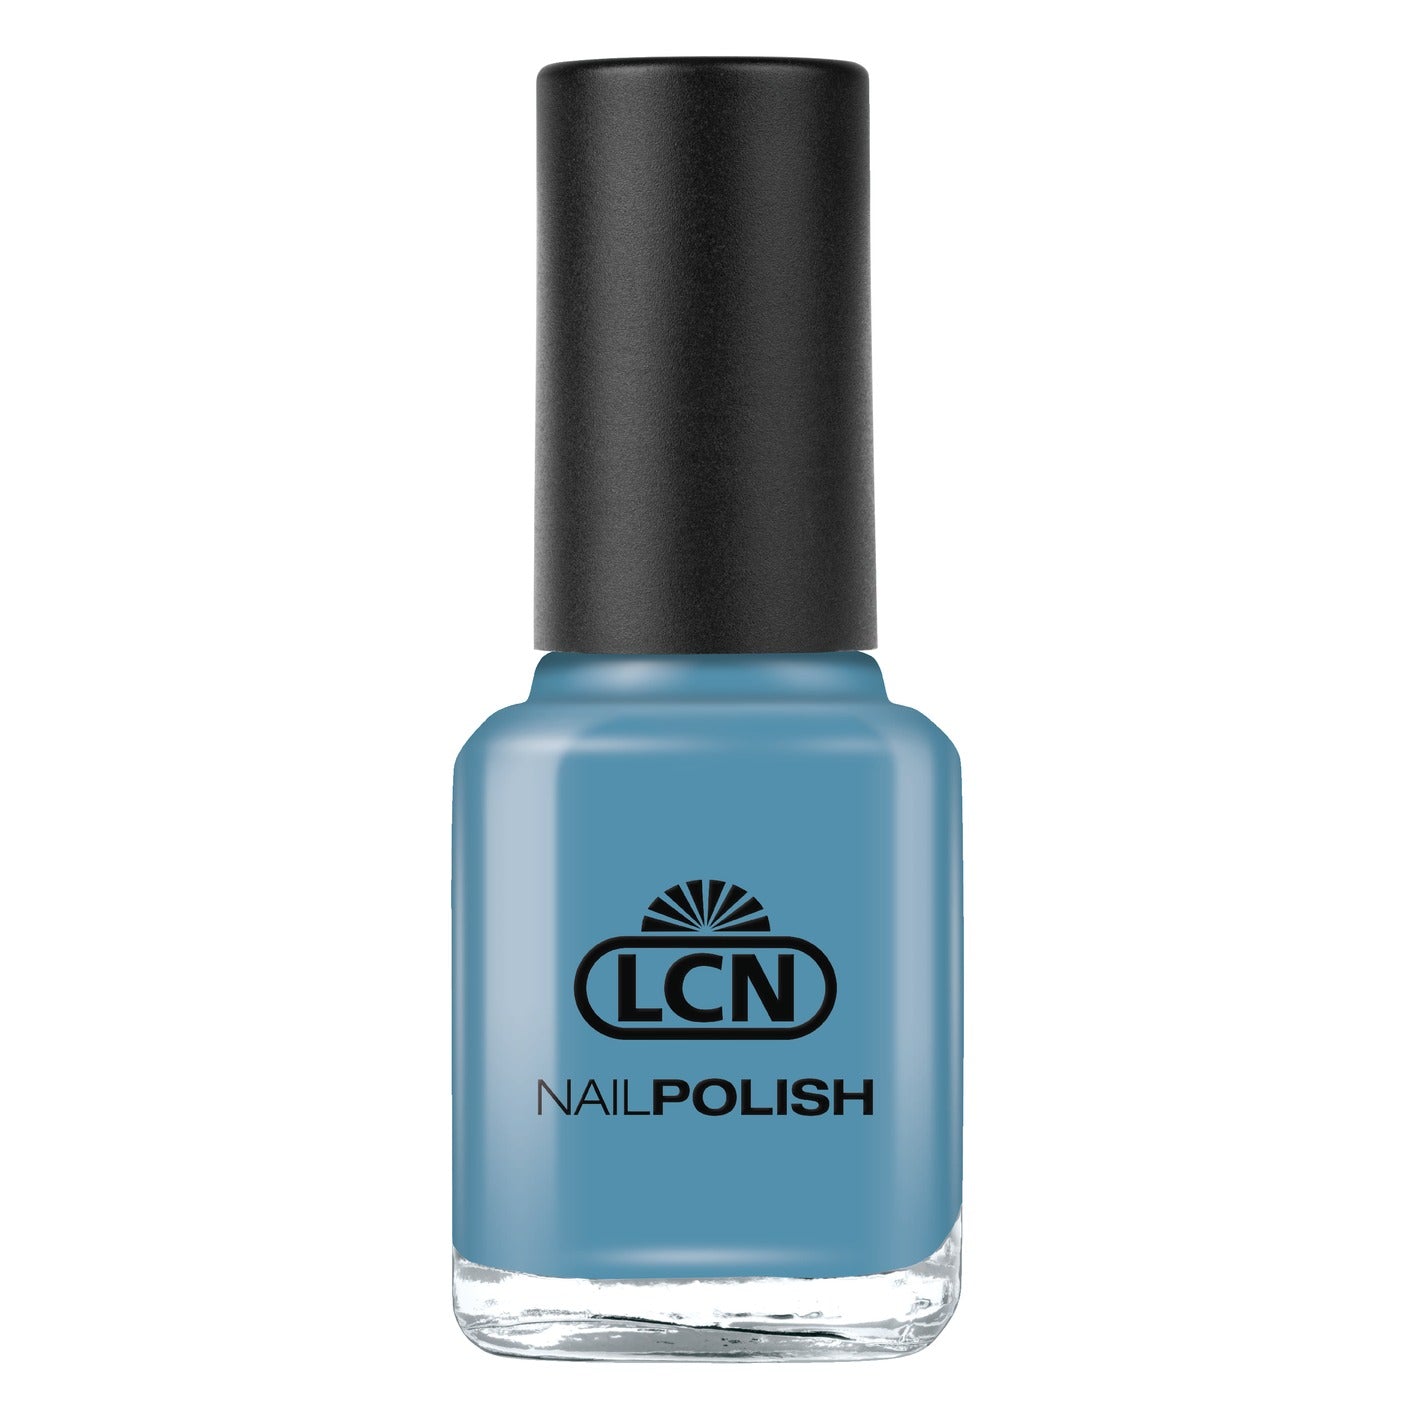 LCN Nail Polish, 516 light denim, 8ml